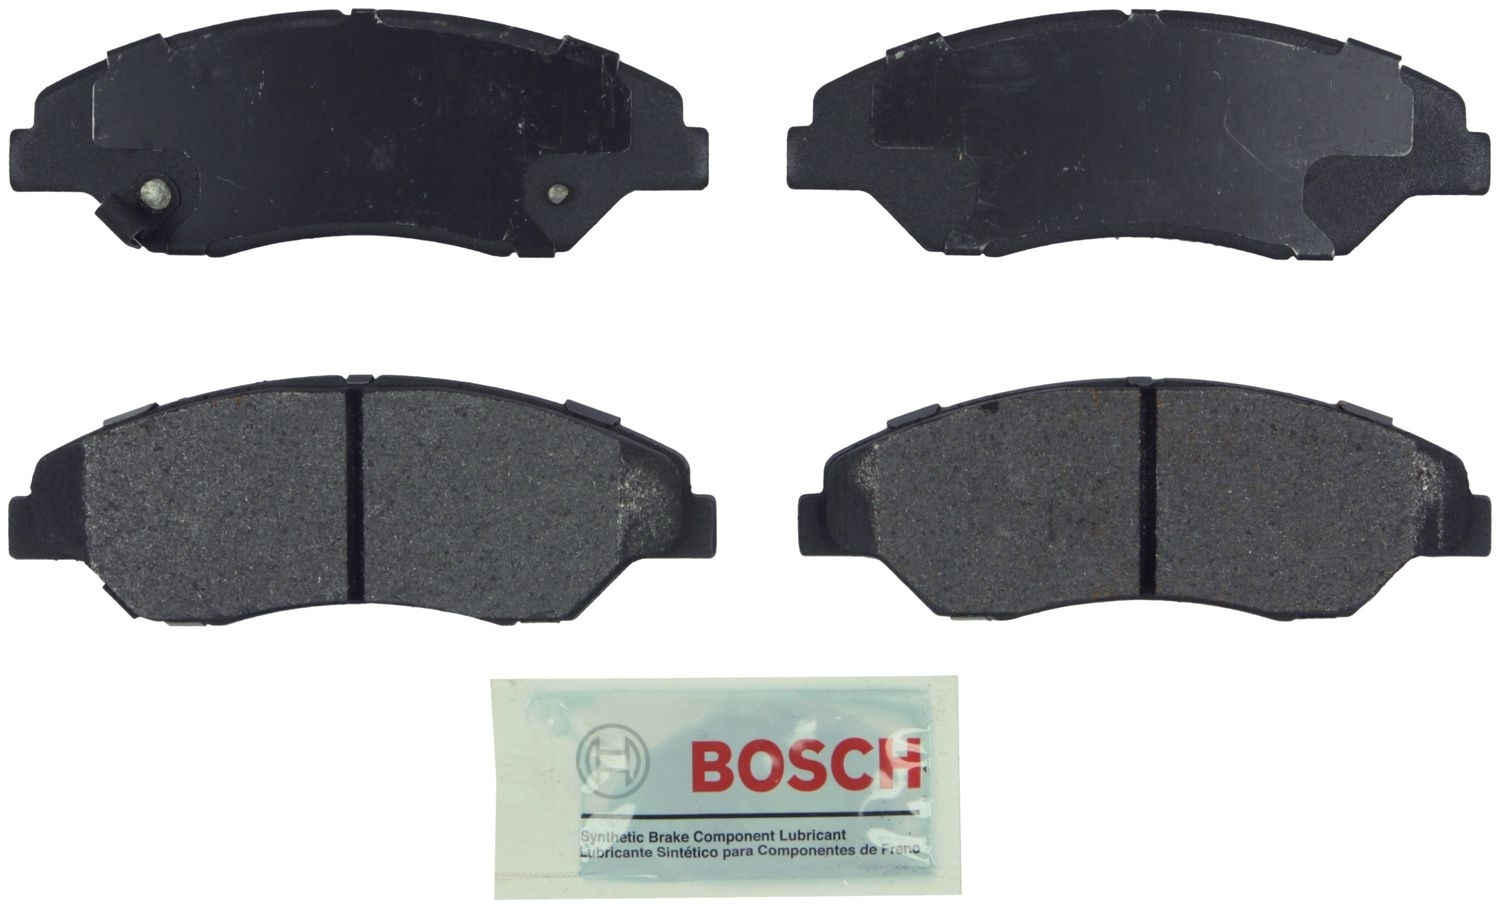 BOSCH BRAKE - Bosch Blue Ceramic Brake Pads - BQC BE774